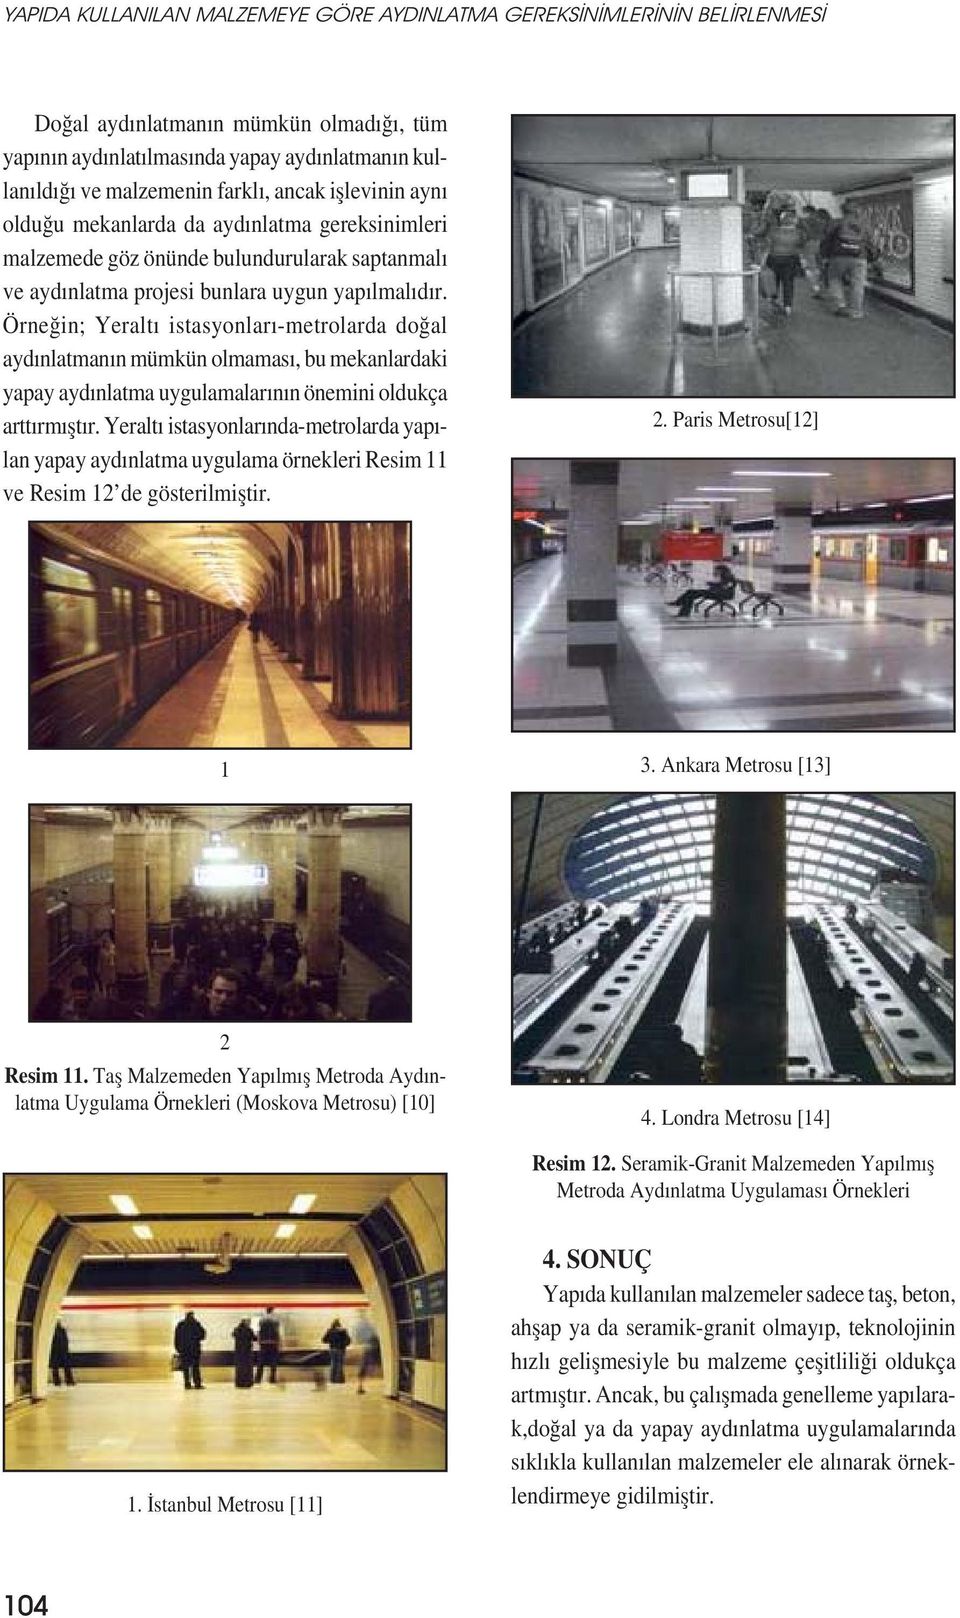 Örneğin; Yeraltı istasyonları-metrolarda doğal aydınlatmanın mümkün olmaması, bu mekanlardaki yapay aydınlatma uygulamalarının önemini oldukça arttırmıștır.